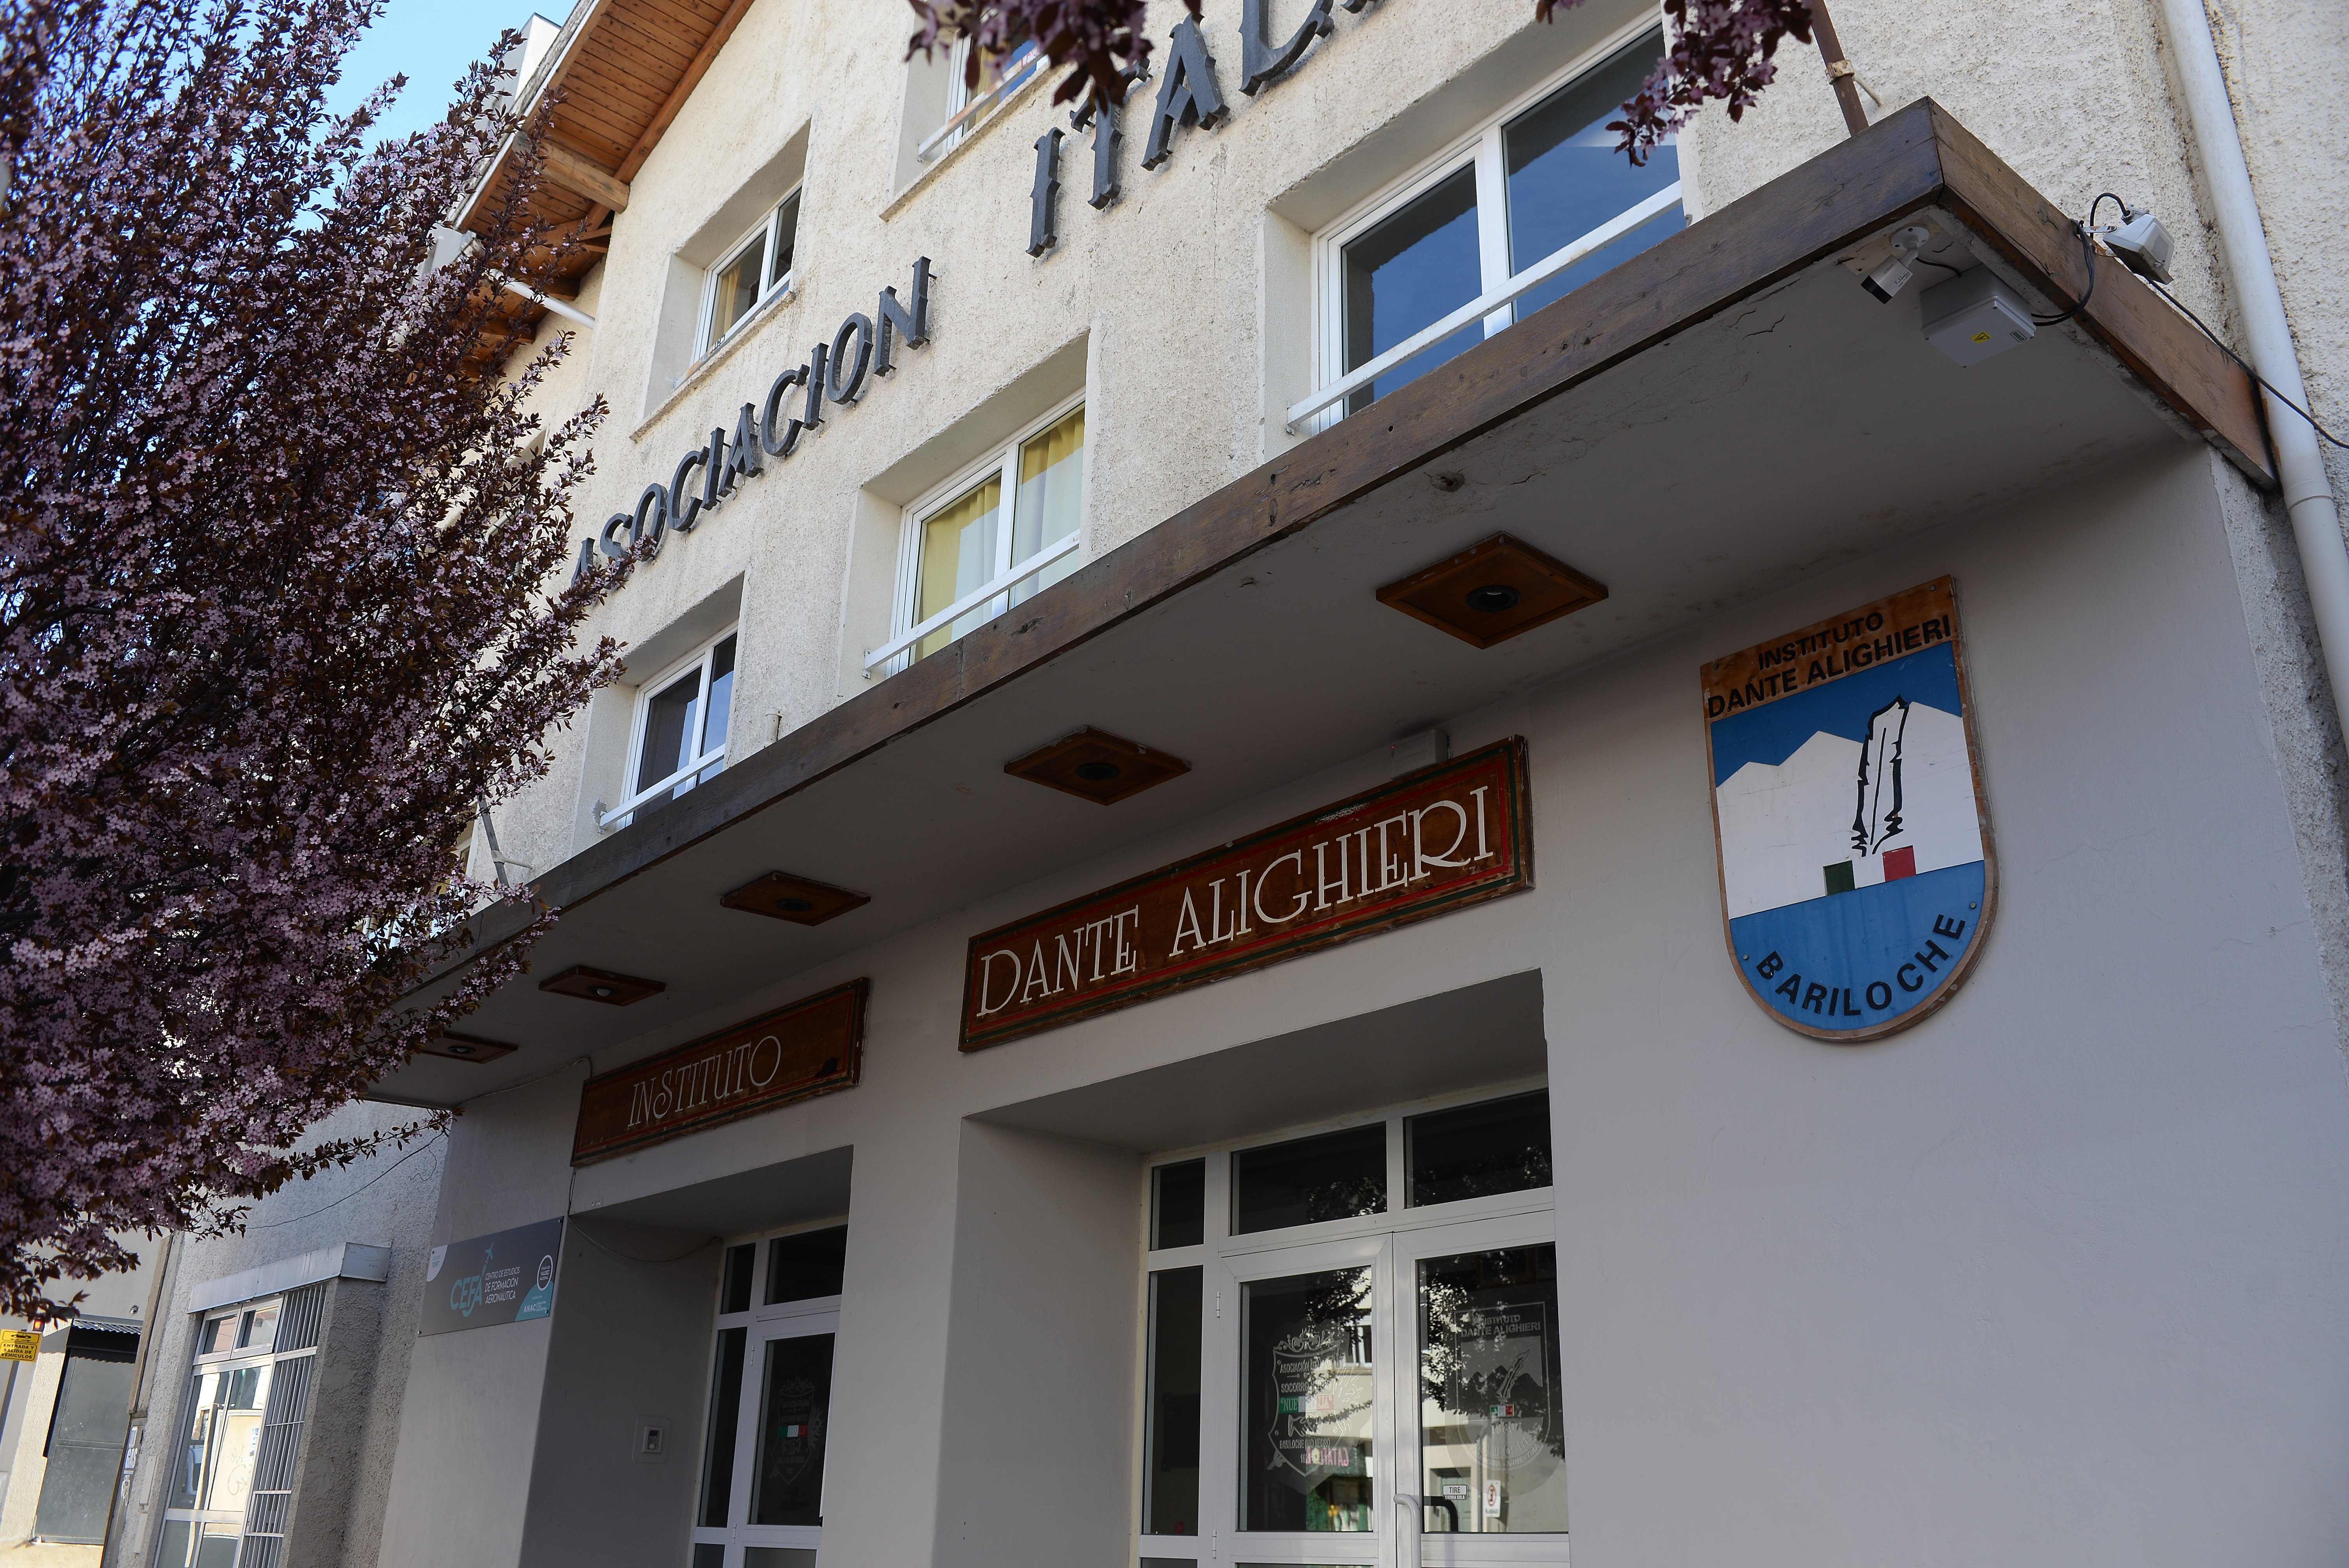 Uno de los colegios más tradicionales de Bariloche, Dante Alighieri, en pleno centro de la ciudad. El índice de cobranza de la cuota cayó de manera dramática. Foto: Alfredo Leiva